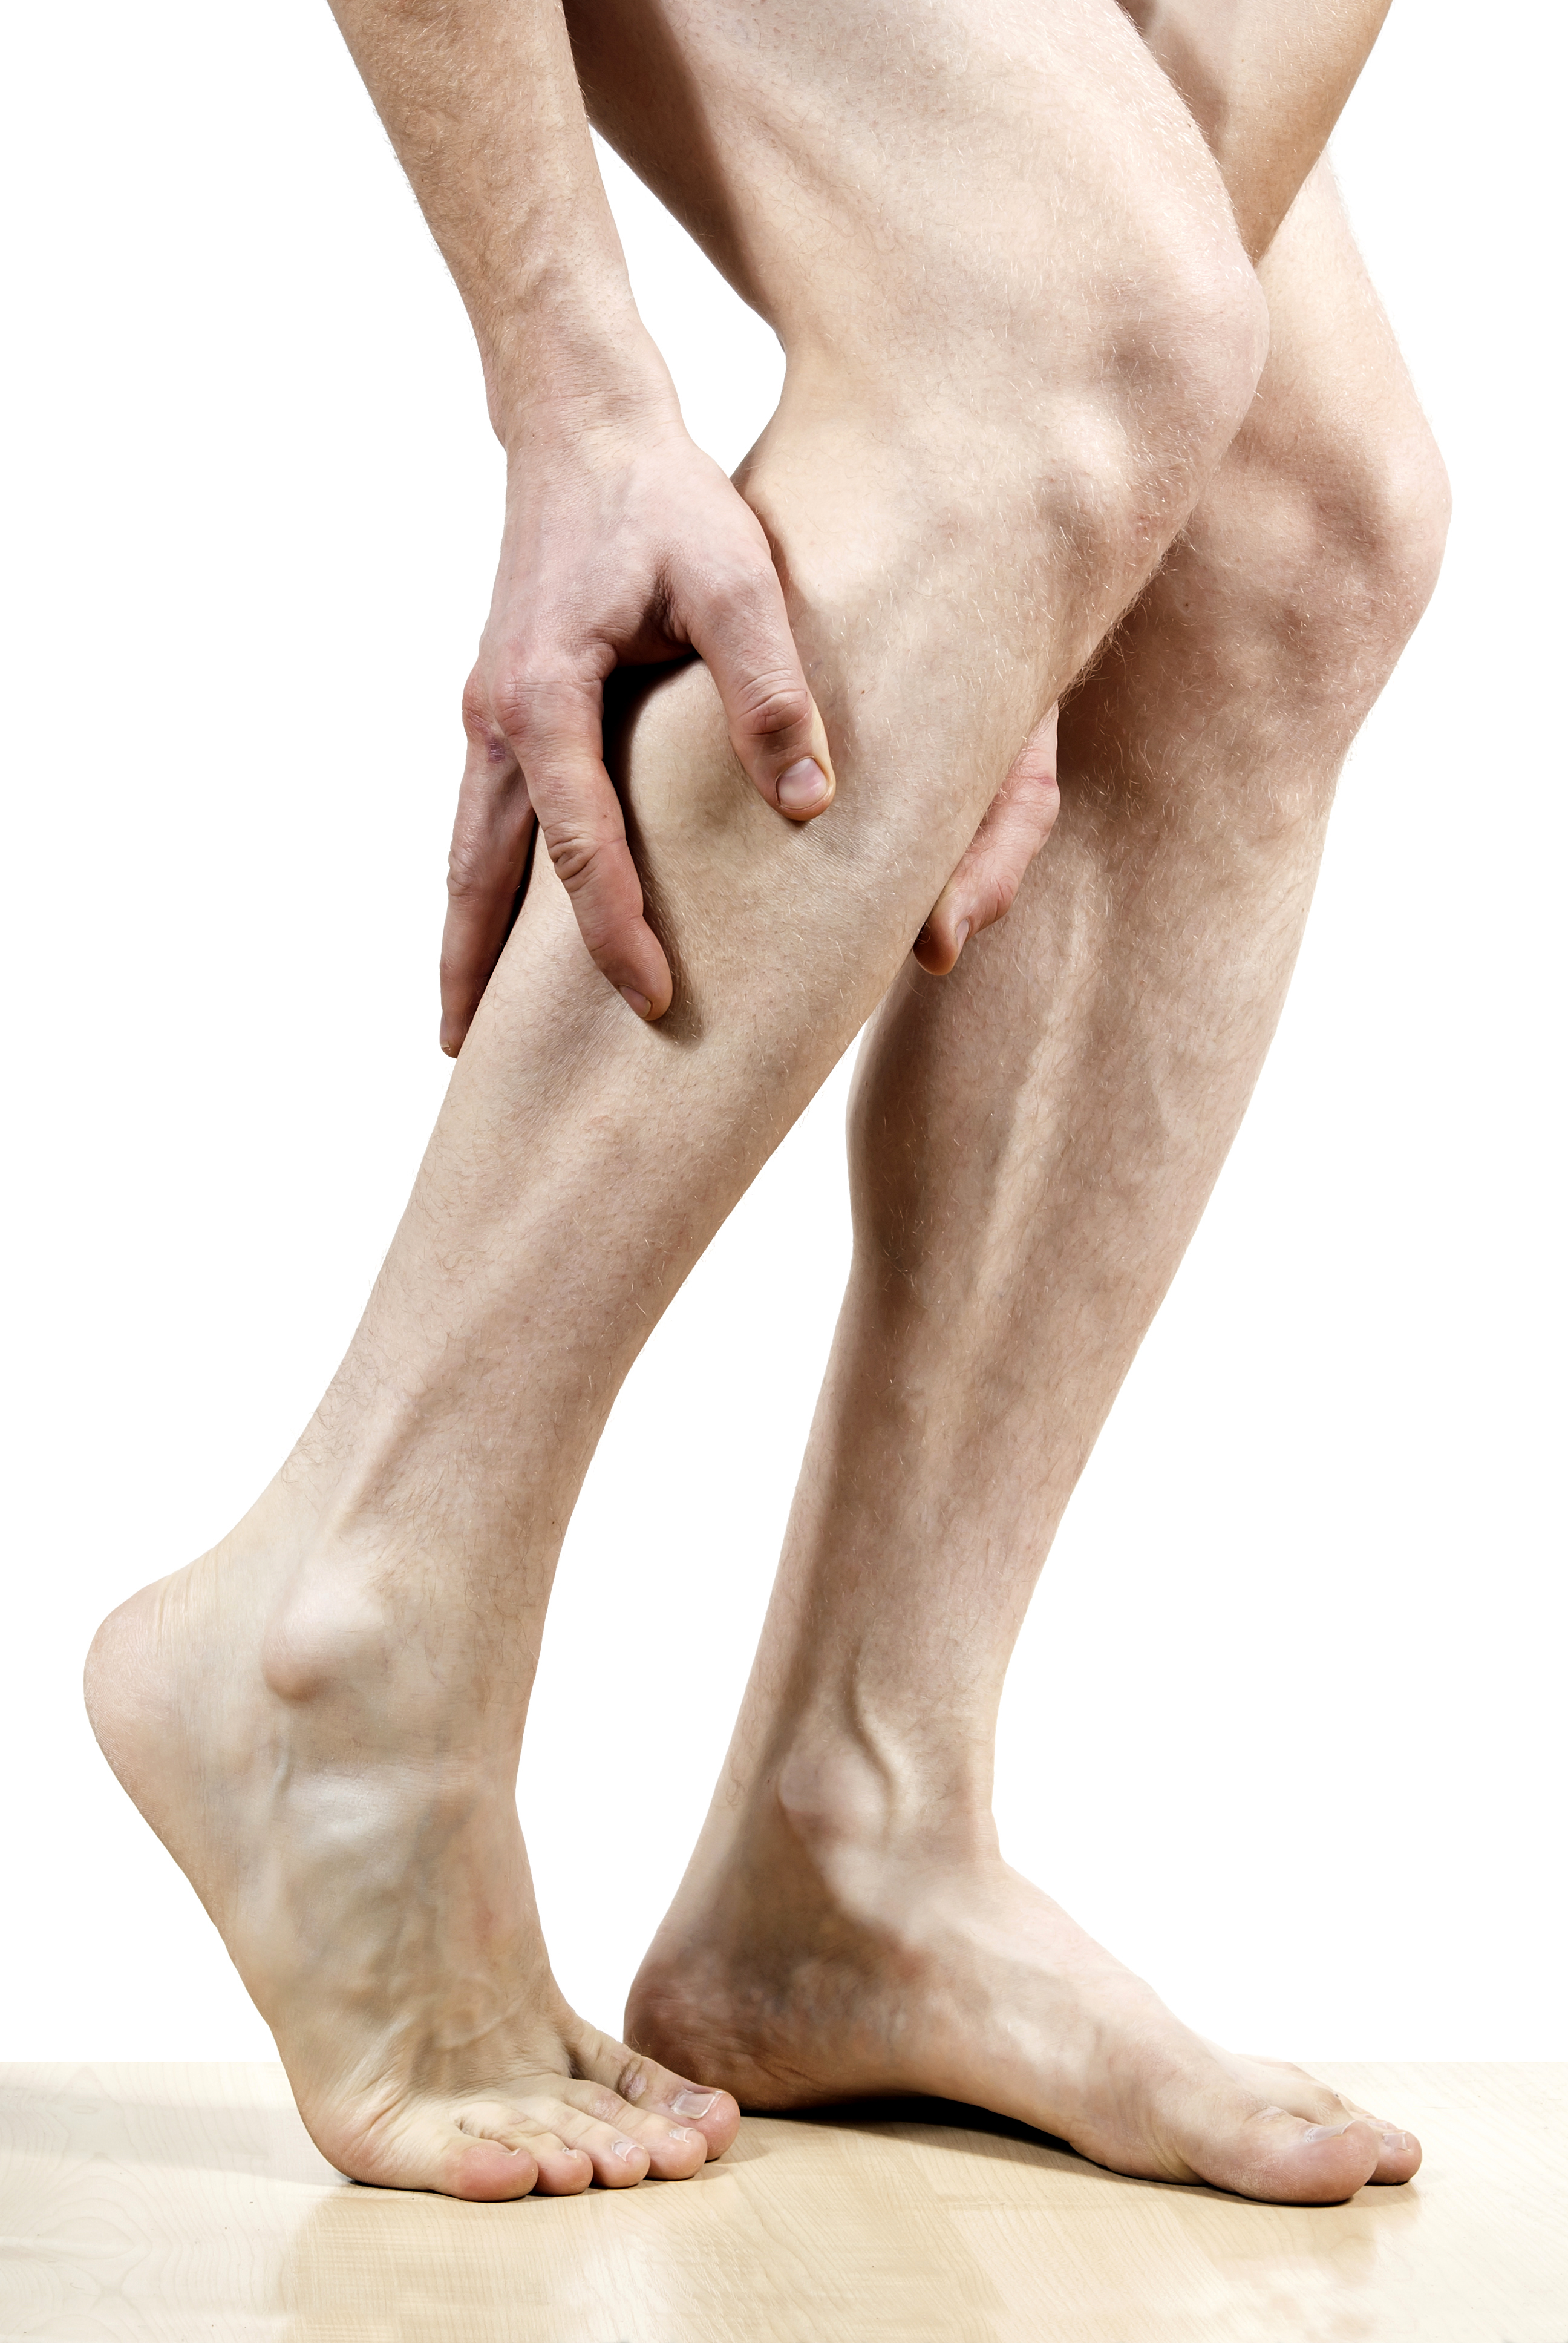 Leg pain. Облитерирующий атеросклероз гангрена. Рожистое воспаление голени. Атеросклероз сосудов нижних конечностей симптомы. Стадии атеросклероза нижних конечностей.